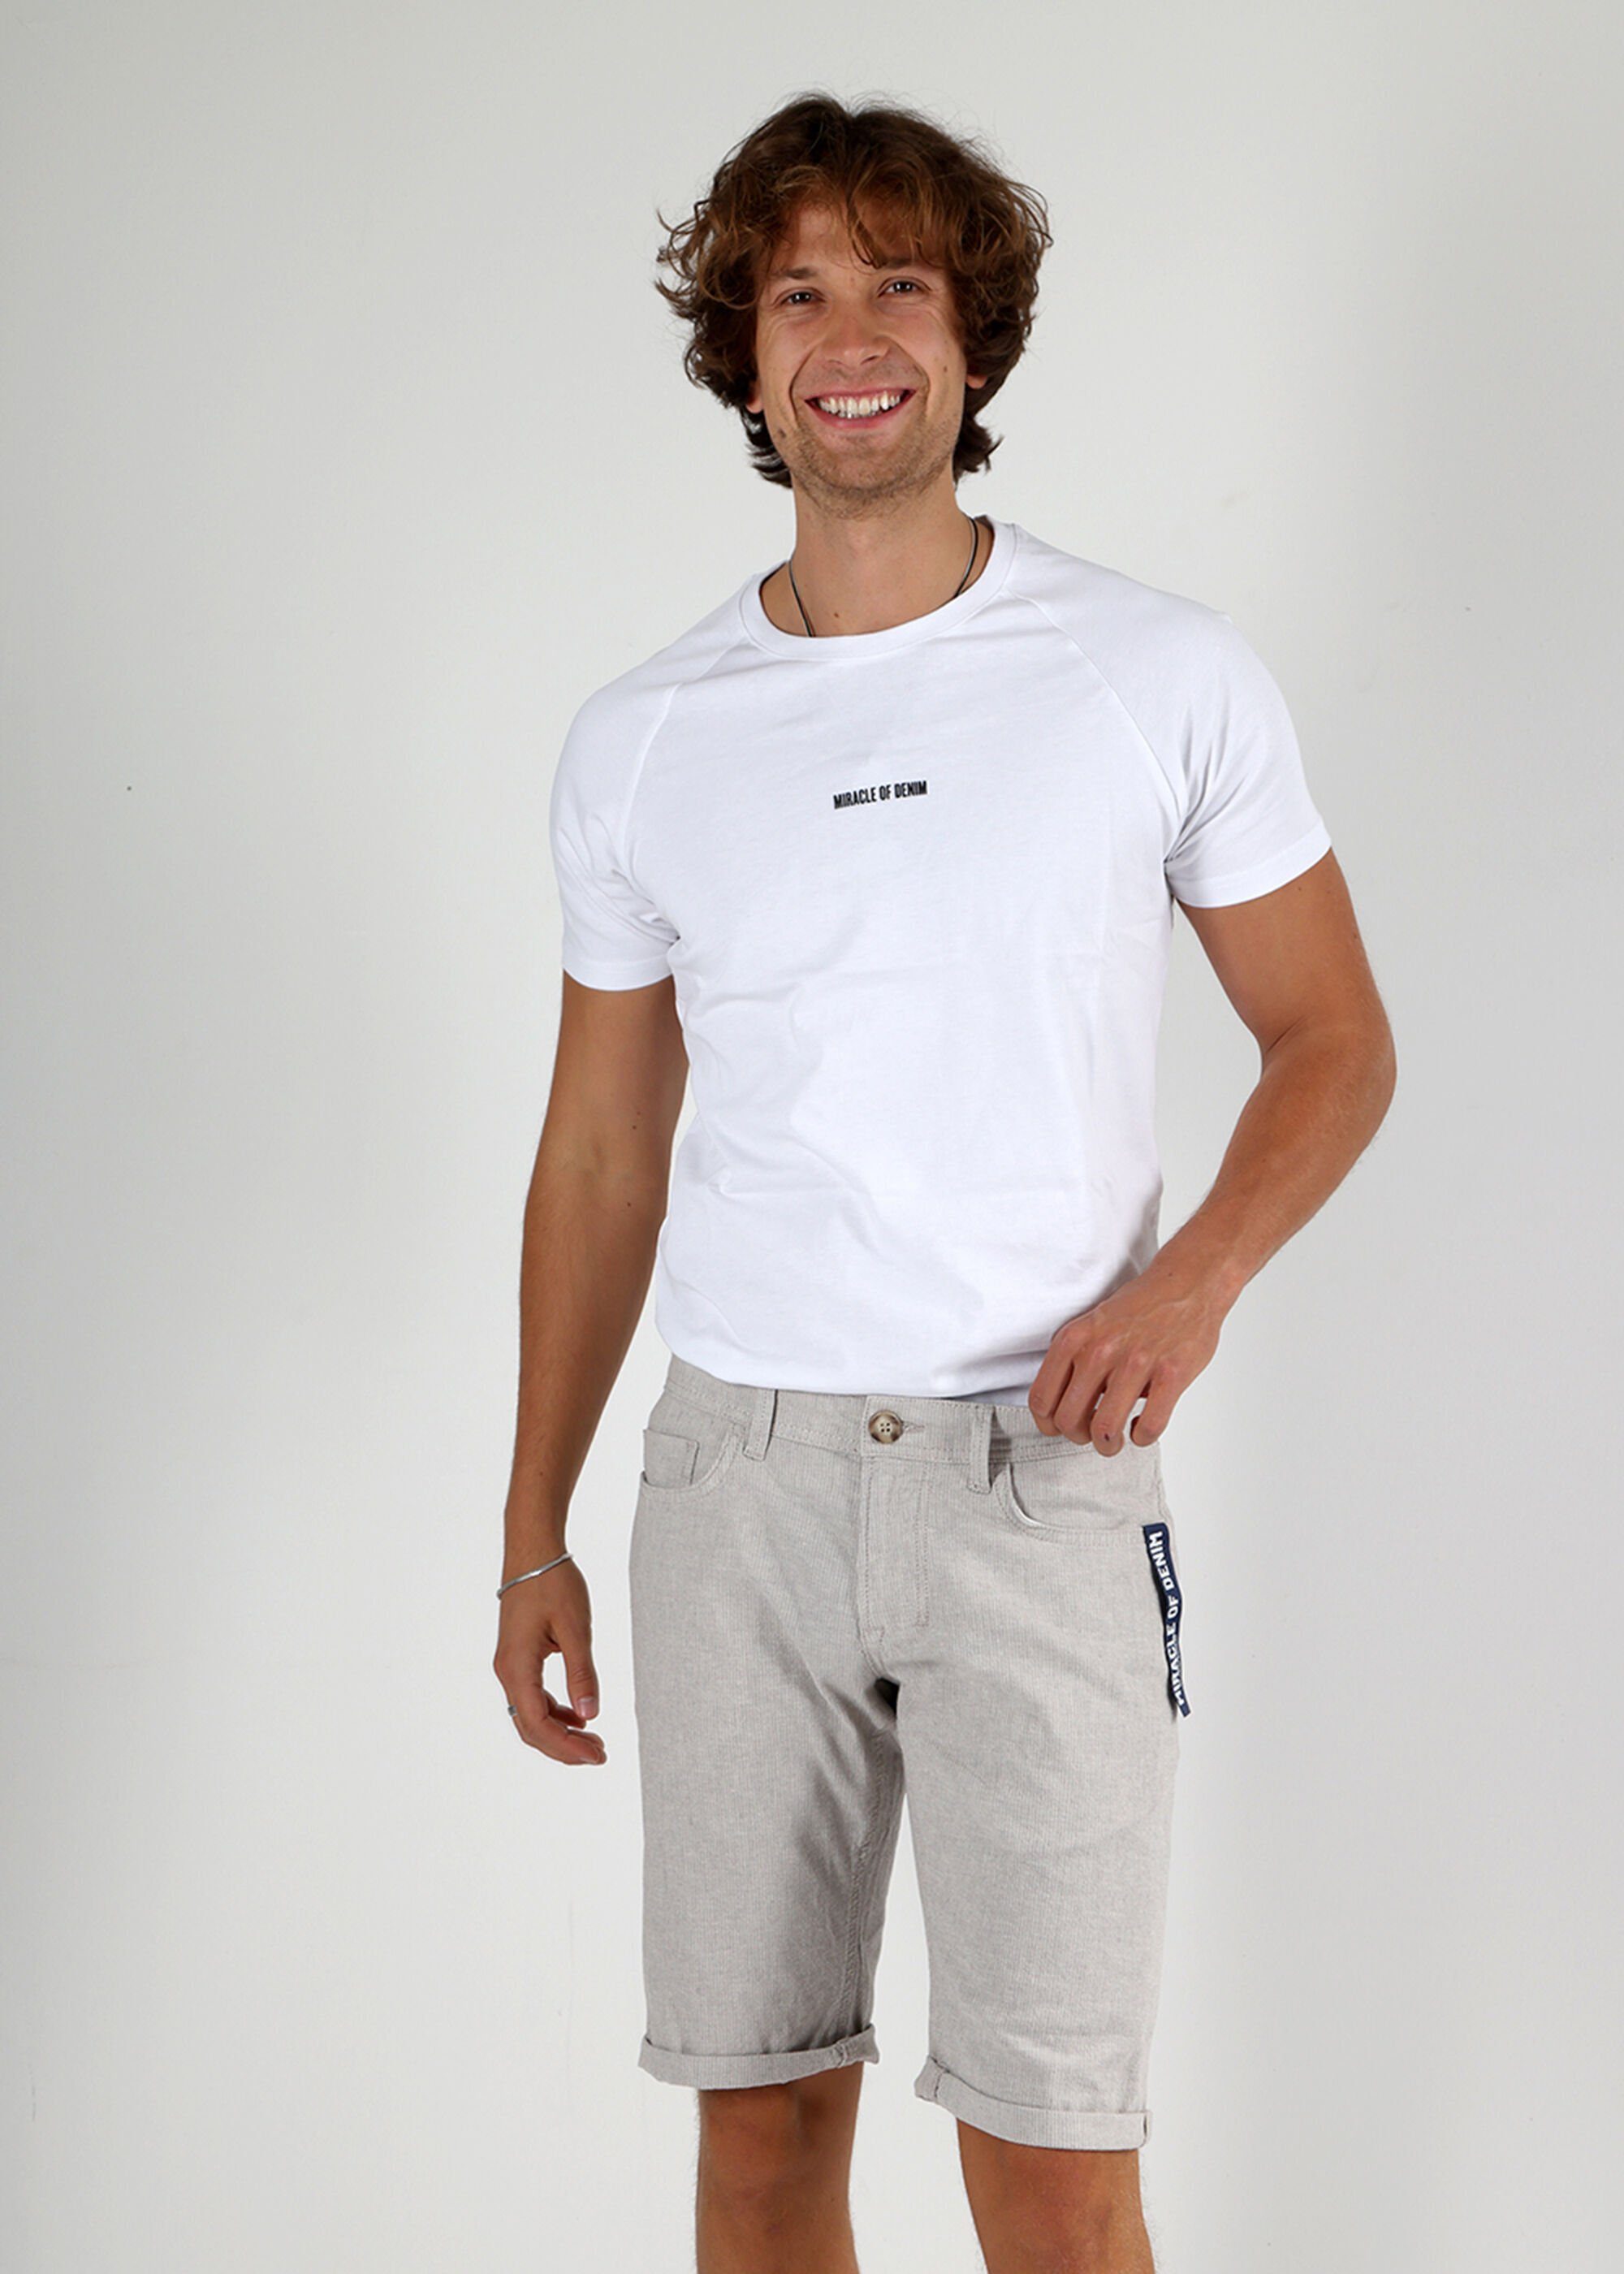 Grey Shorts Shorts Style im of Stripe Miracle 5 Thomas Denim Light Pocket